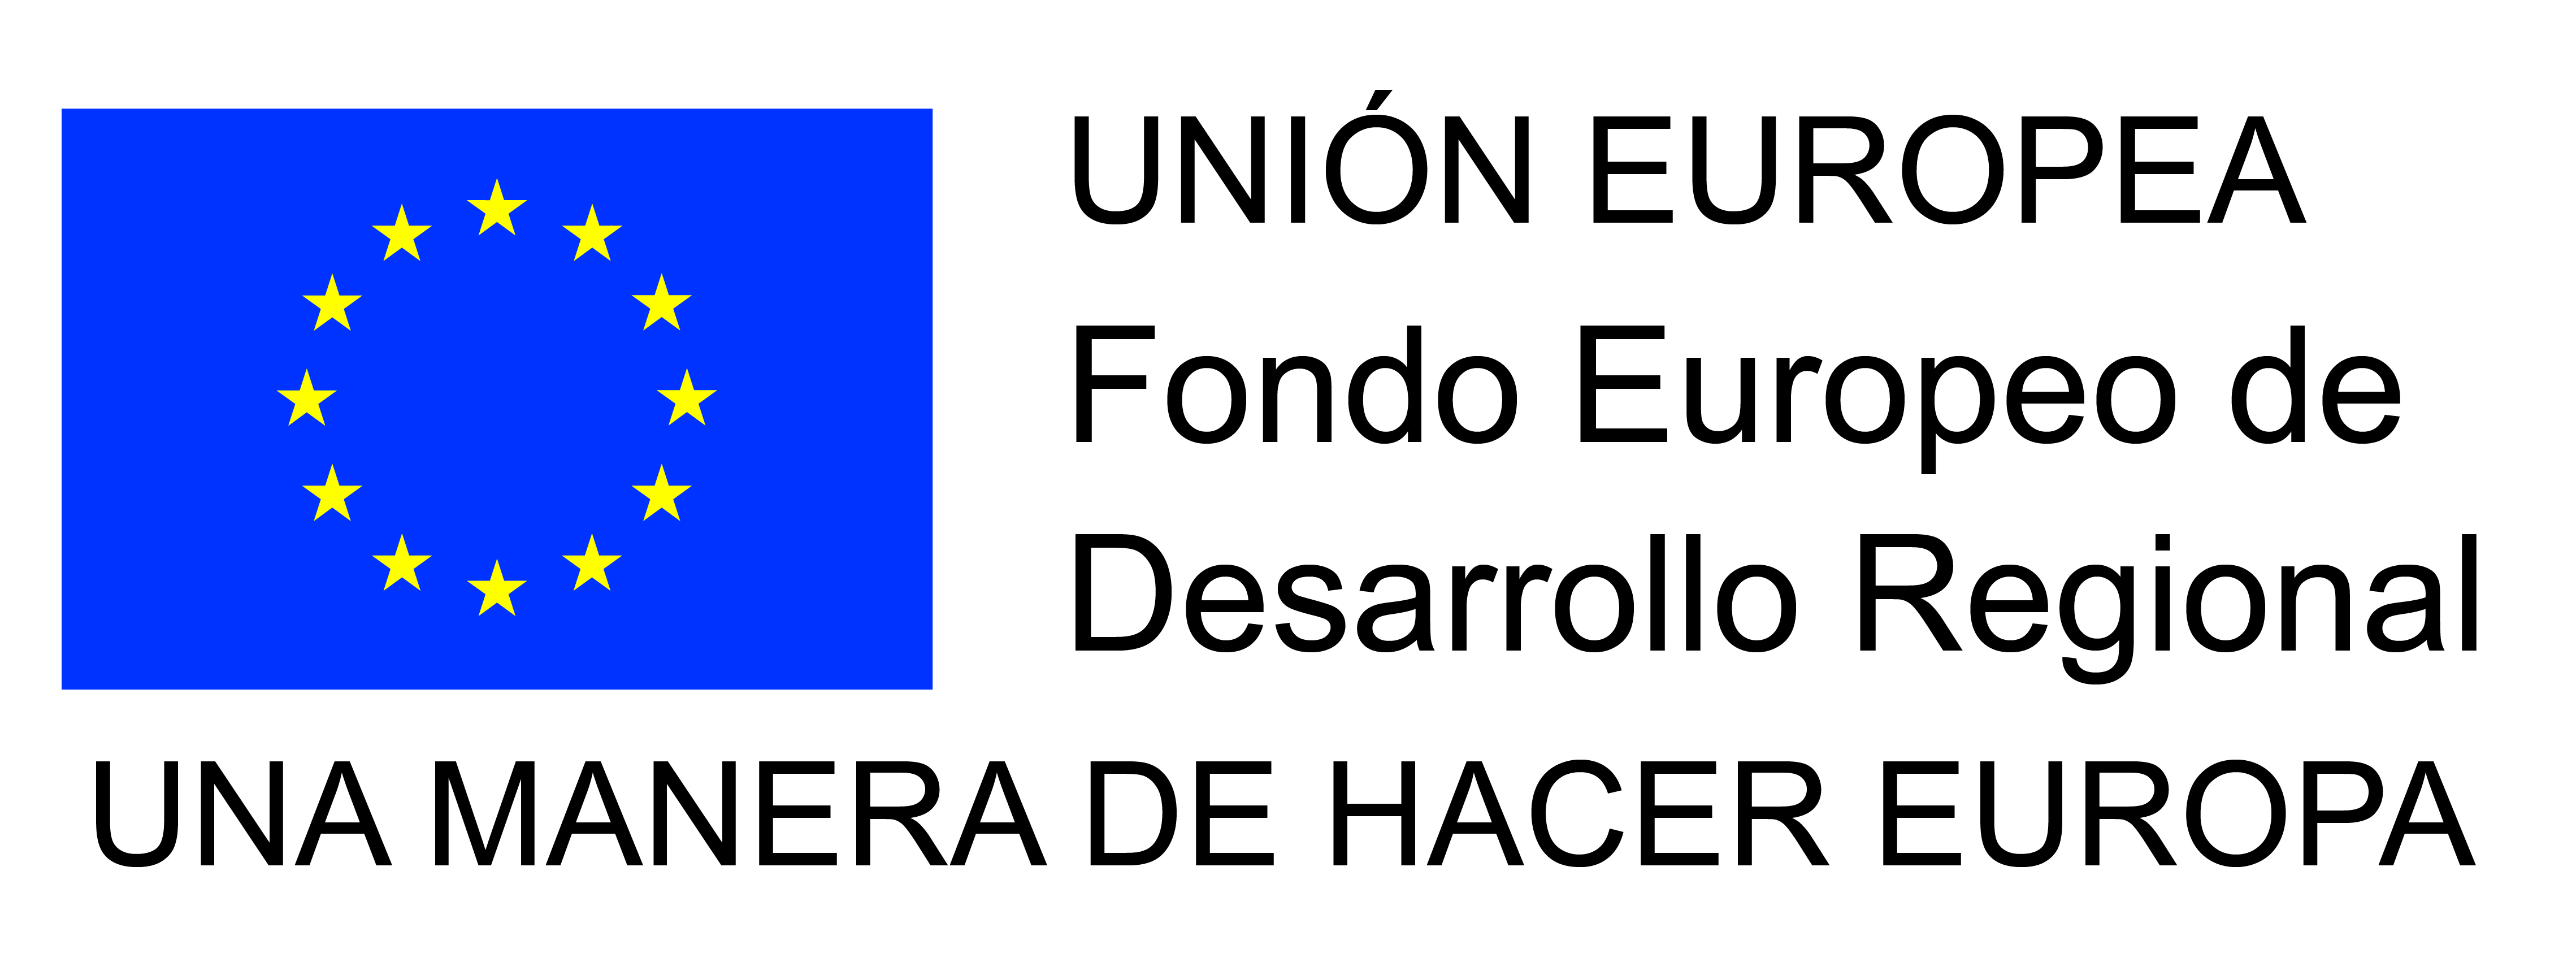 LOGO UNION EUROPEA FONDO DE DESARROLLO REGIONAL